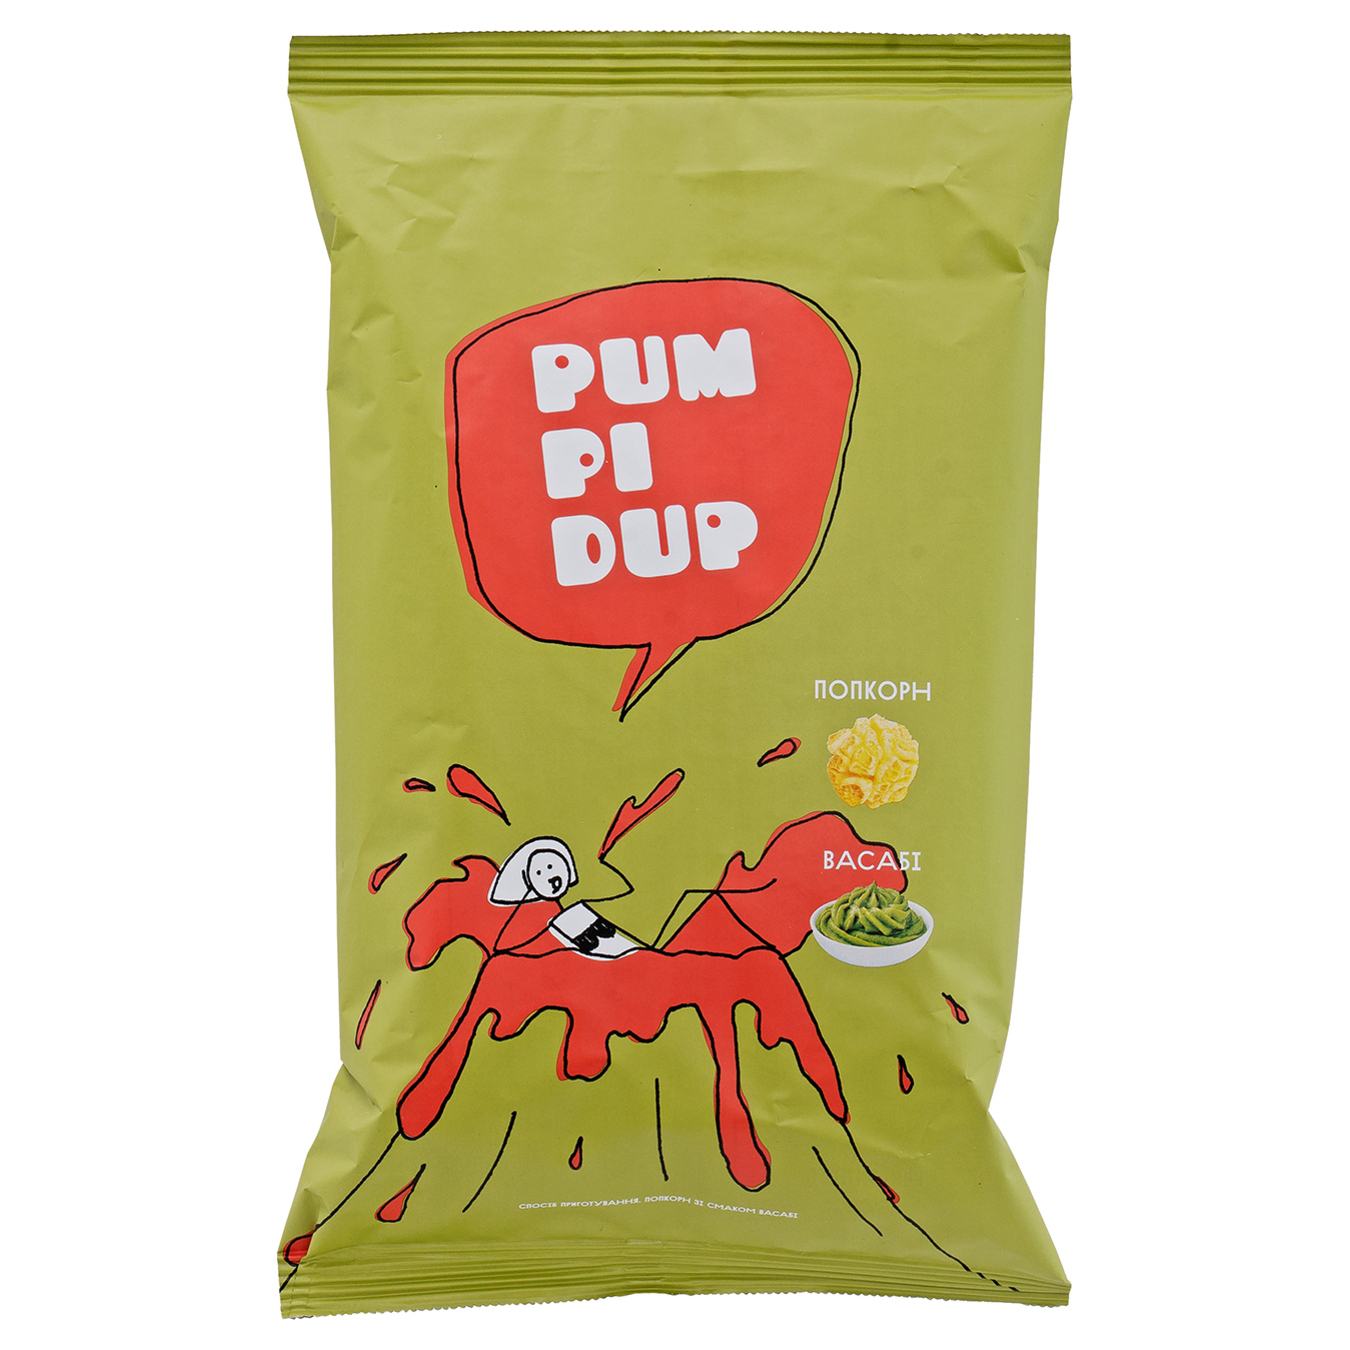 Pumpidup With Wasabi Taste Popcorn 90g